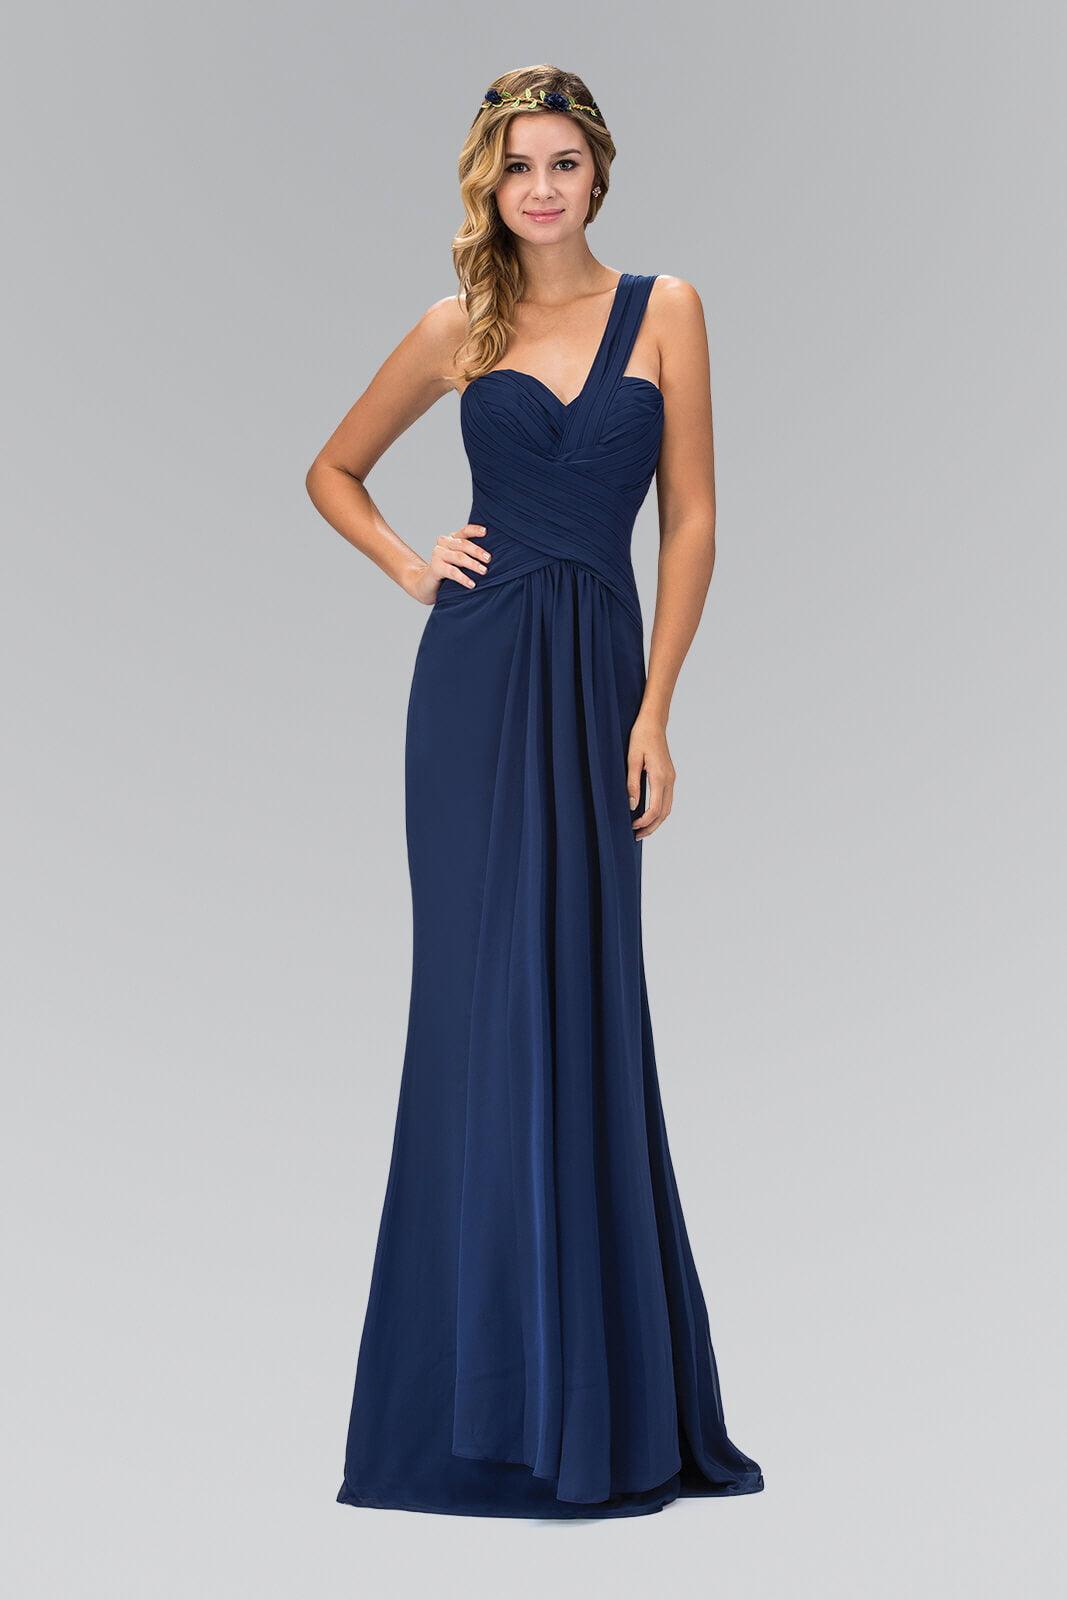 One Shoulder Ruched Long Prom Dress Fomal - The Dress Outlet Elizabeth K